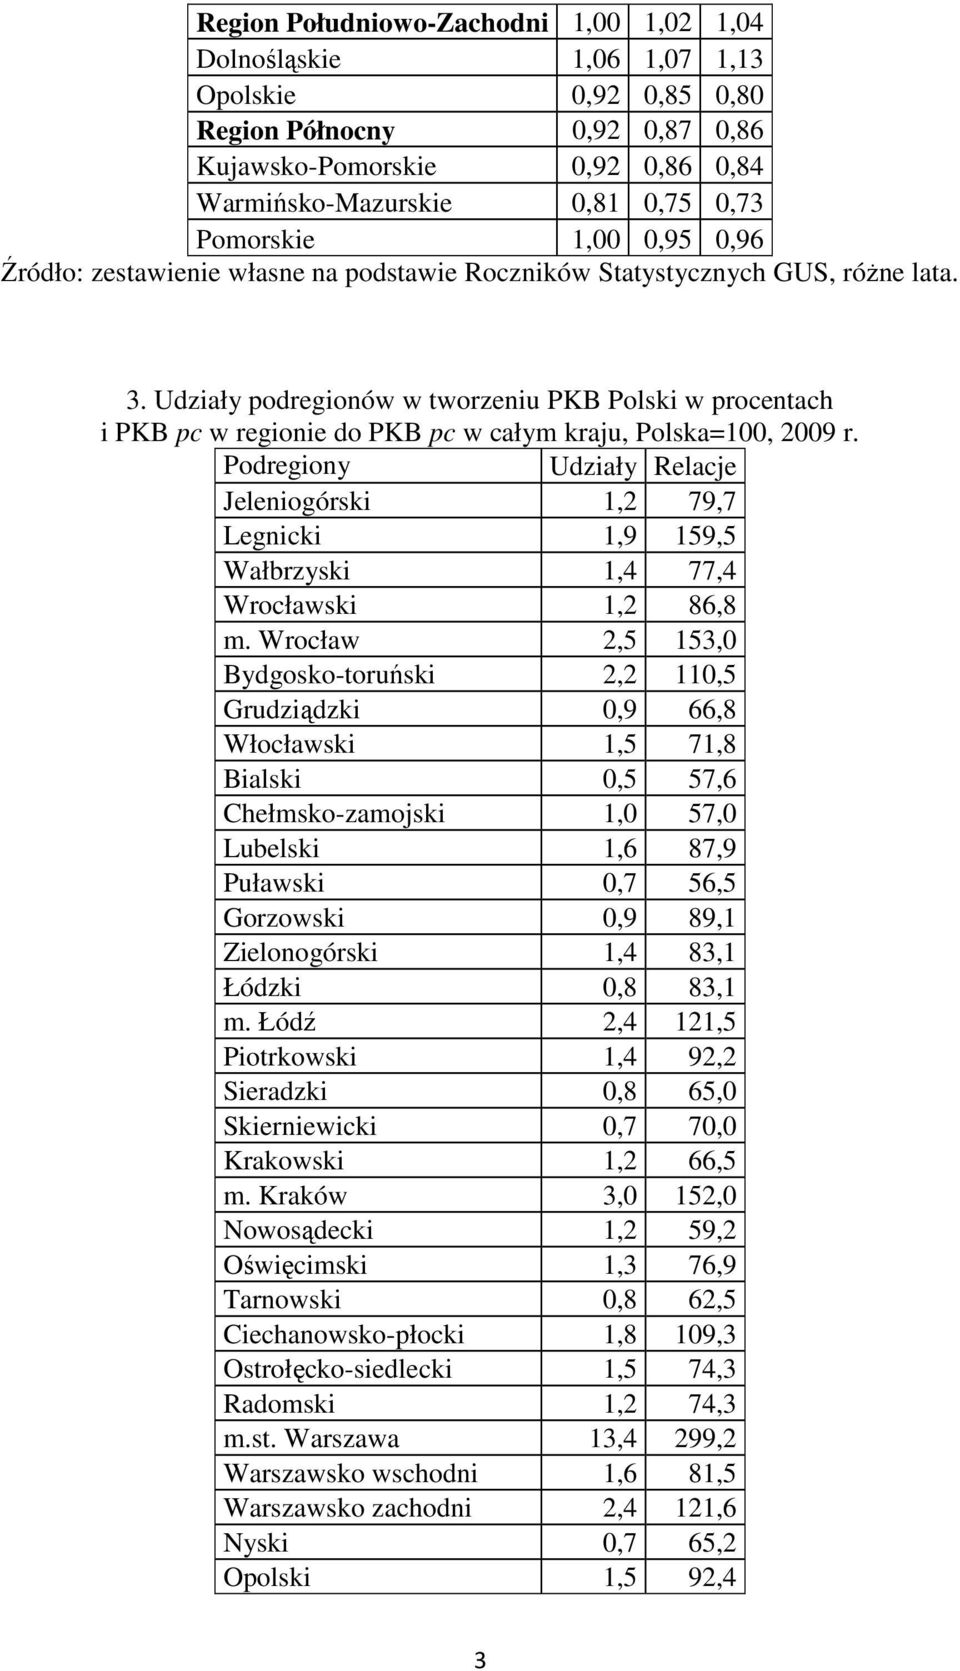 Udziały podregionów w tworzeniu PKB Polski w procentach i PKB pc w regionie do PKB pc w całym kraju, Polska=100, 2009 r.